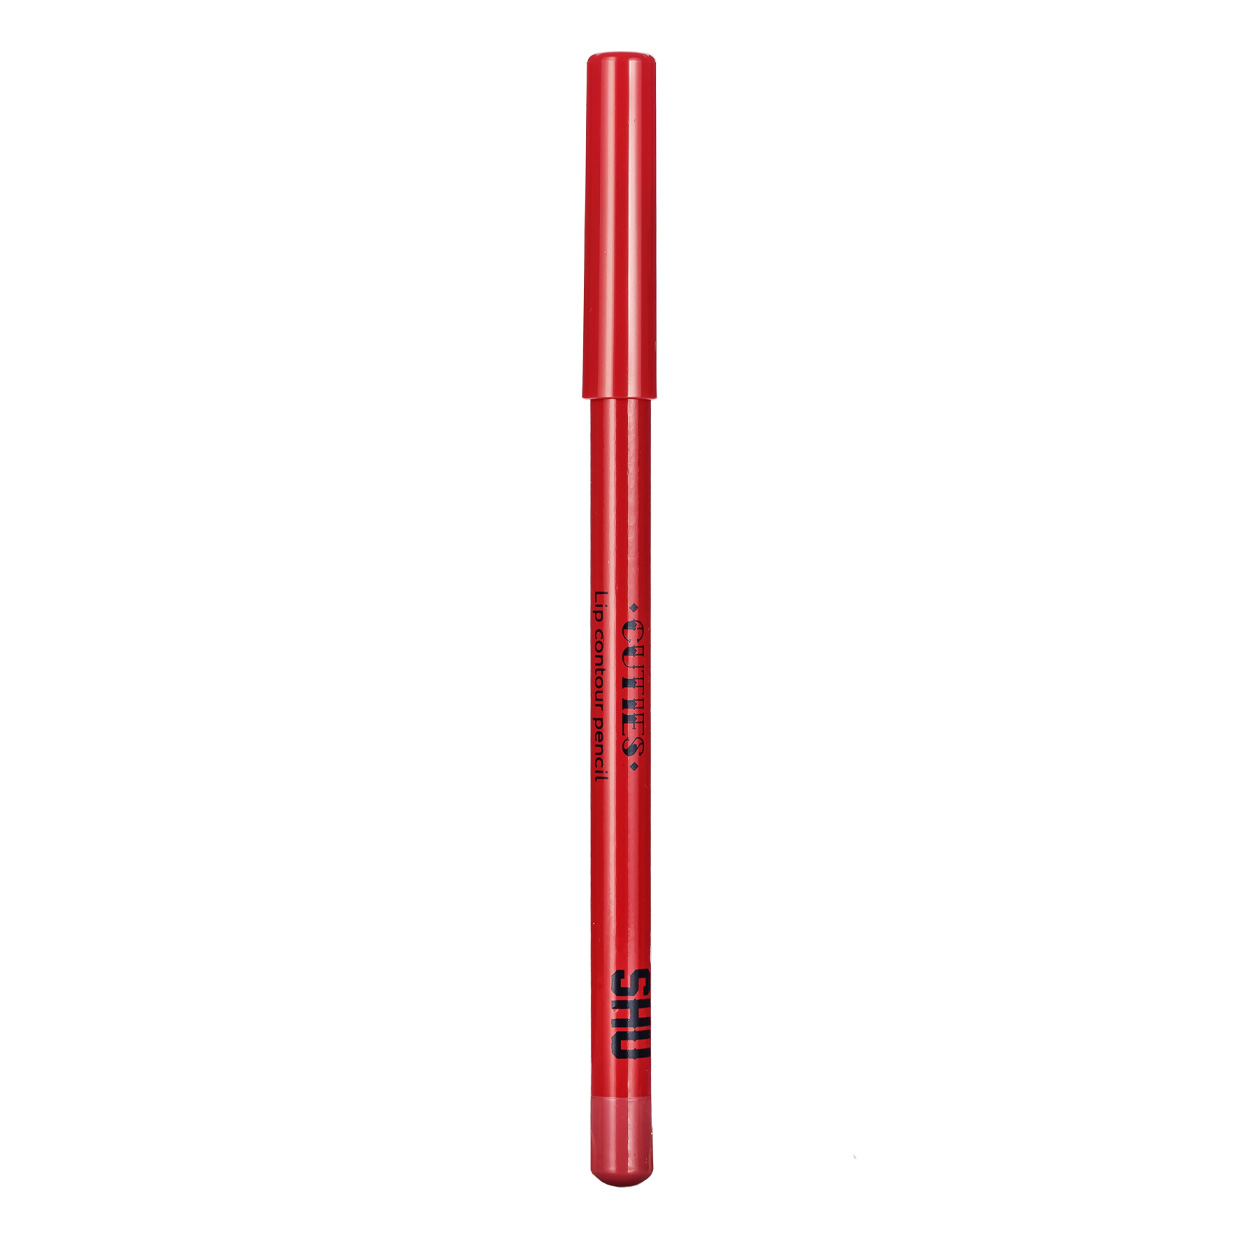 Карандаш для губ SHU Cuties контурный, сатиновый, тон 41 Летний розовый, 0,78 г карандаш для губ shu cuties контурный сатиновый тон 45 терракотовый красный 0 78 г